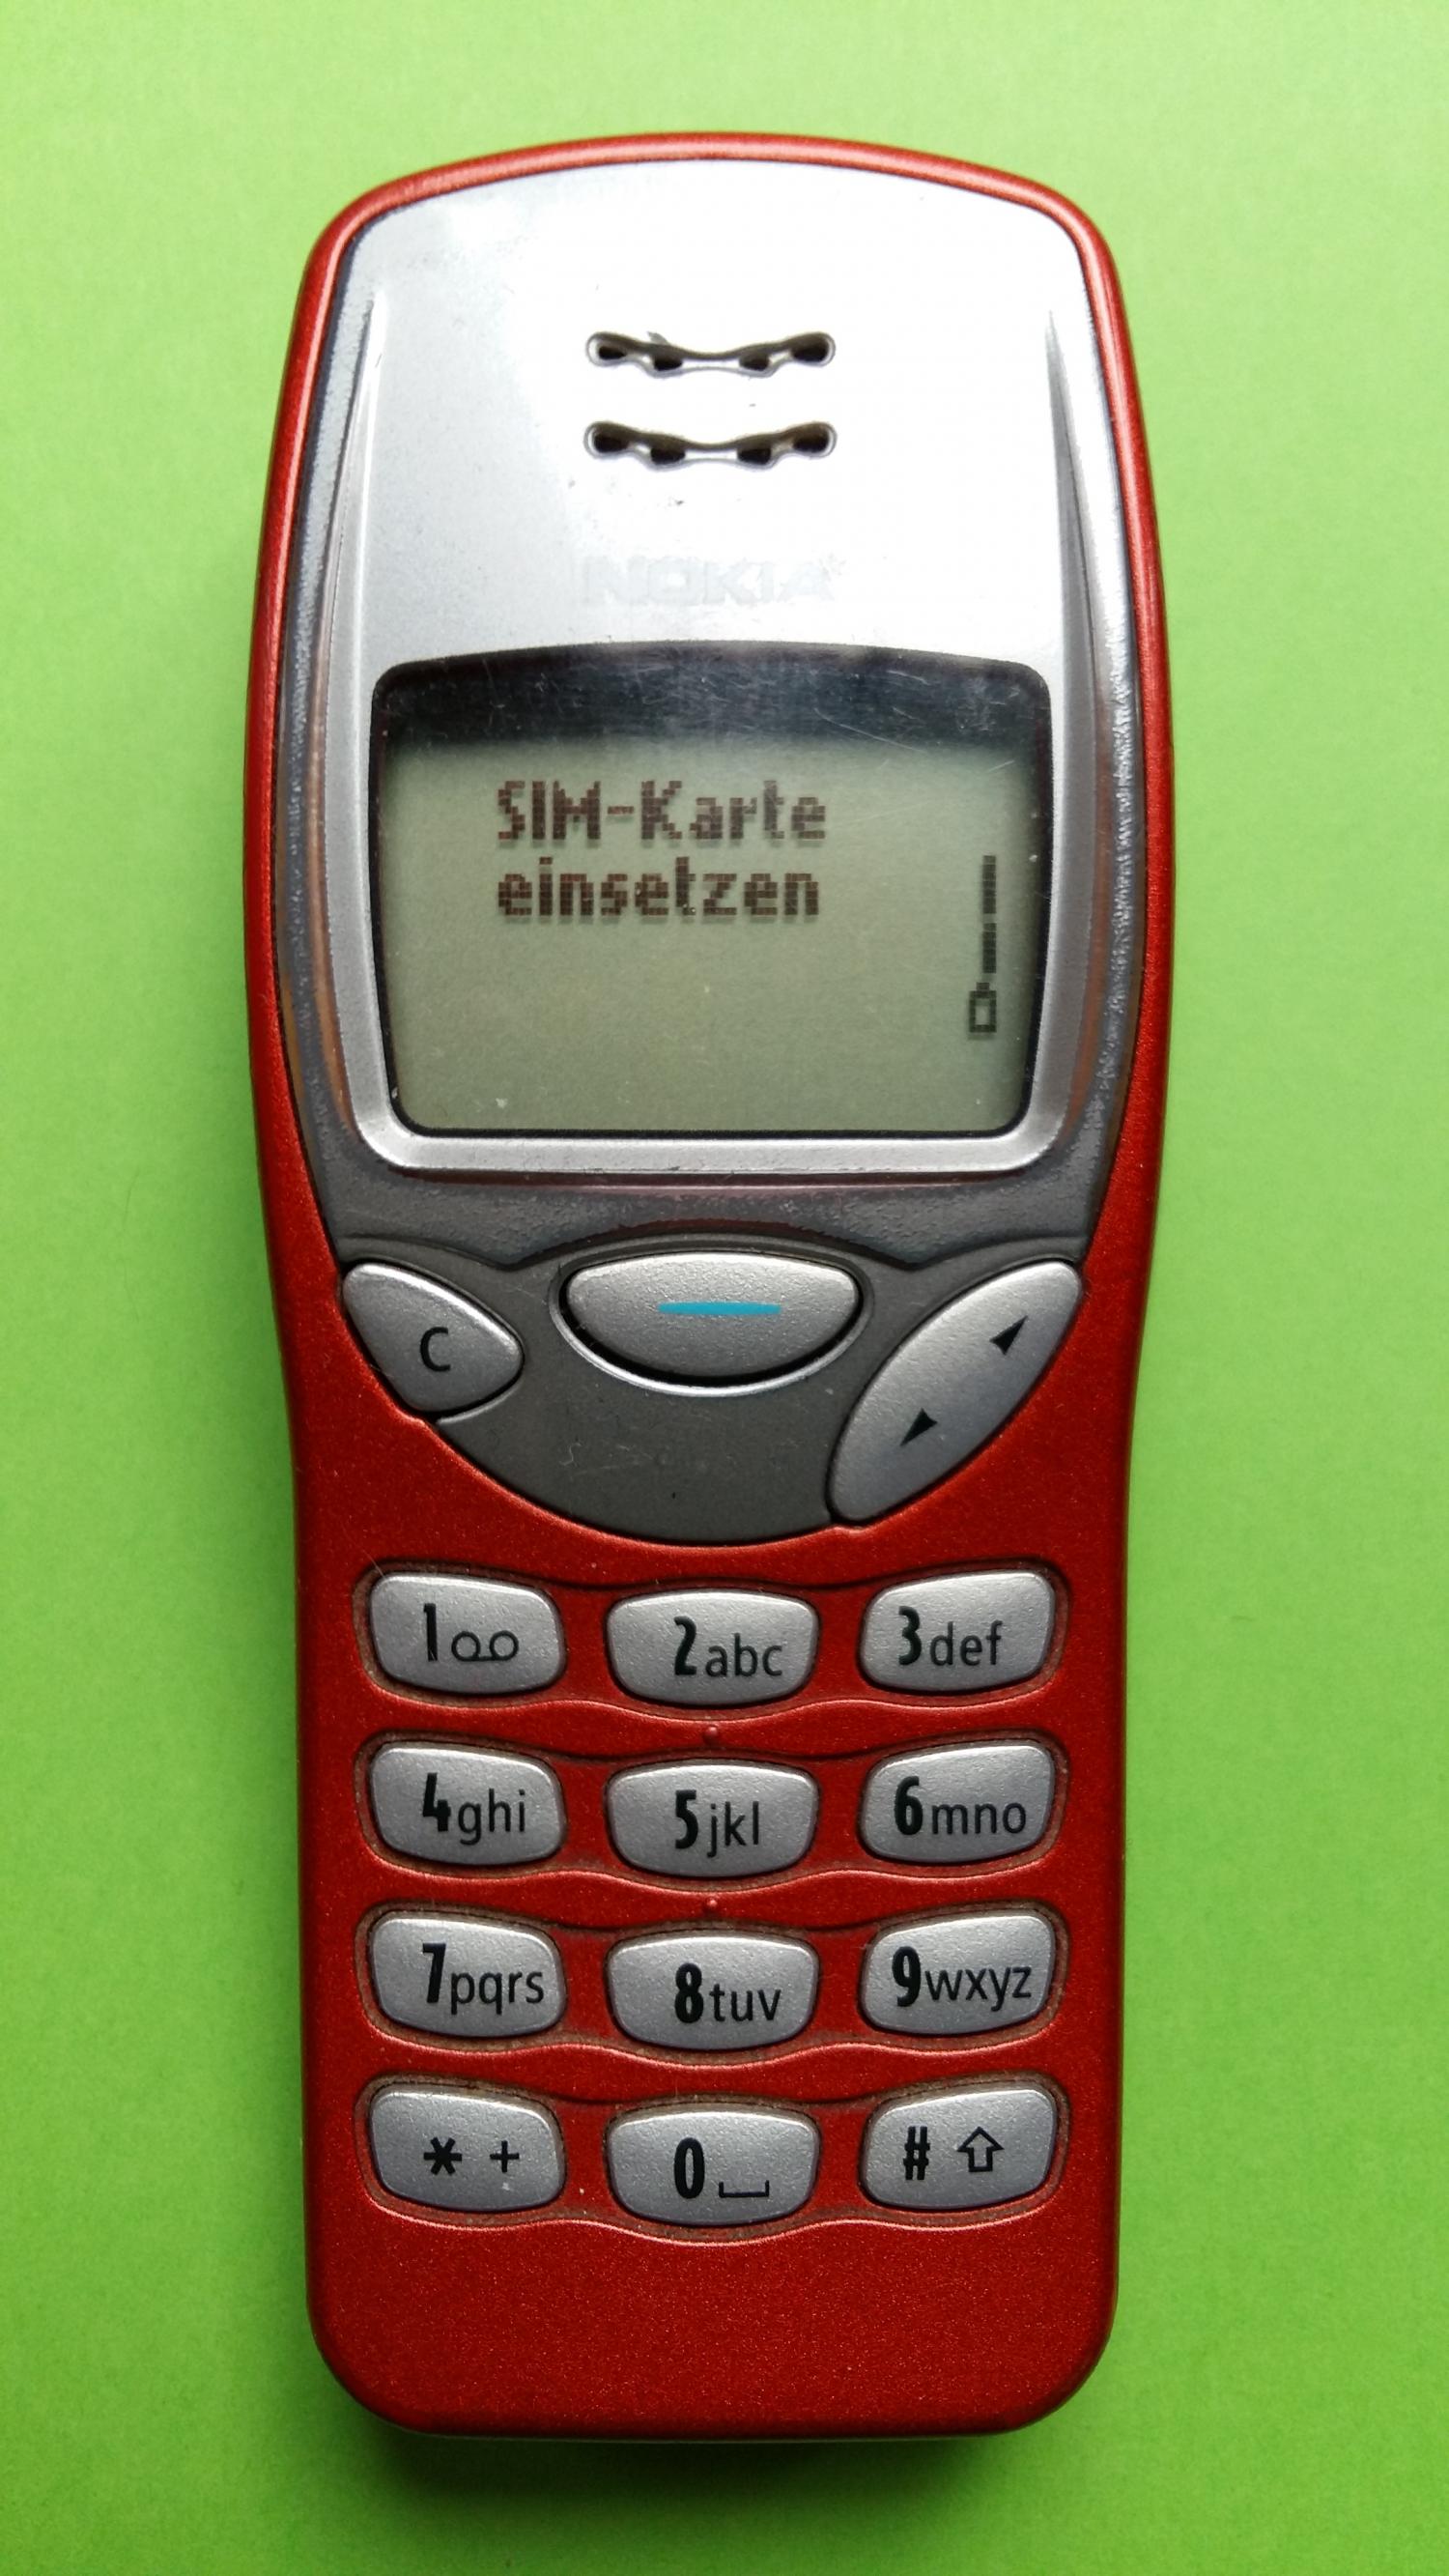 image-7303165-Nokia 3210 (23)1.jpg